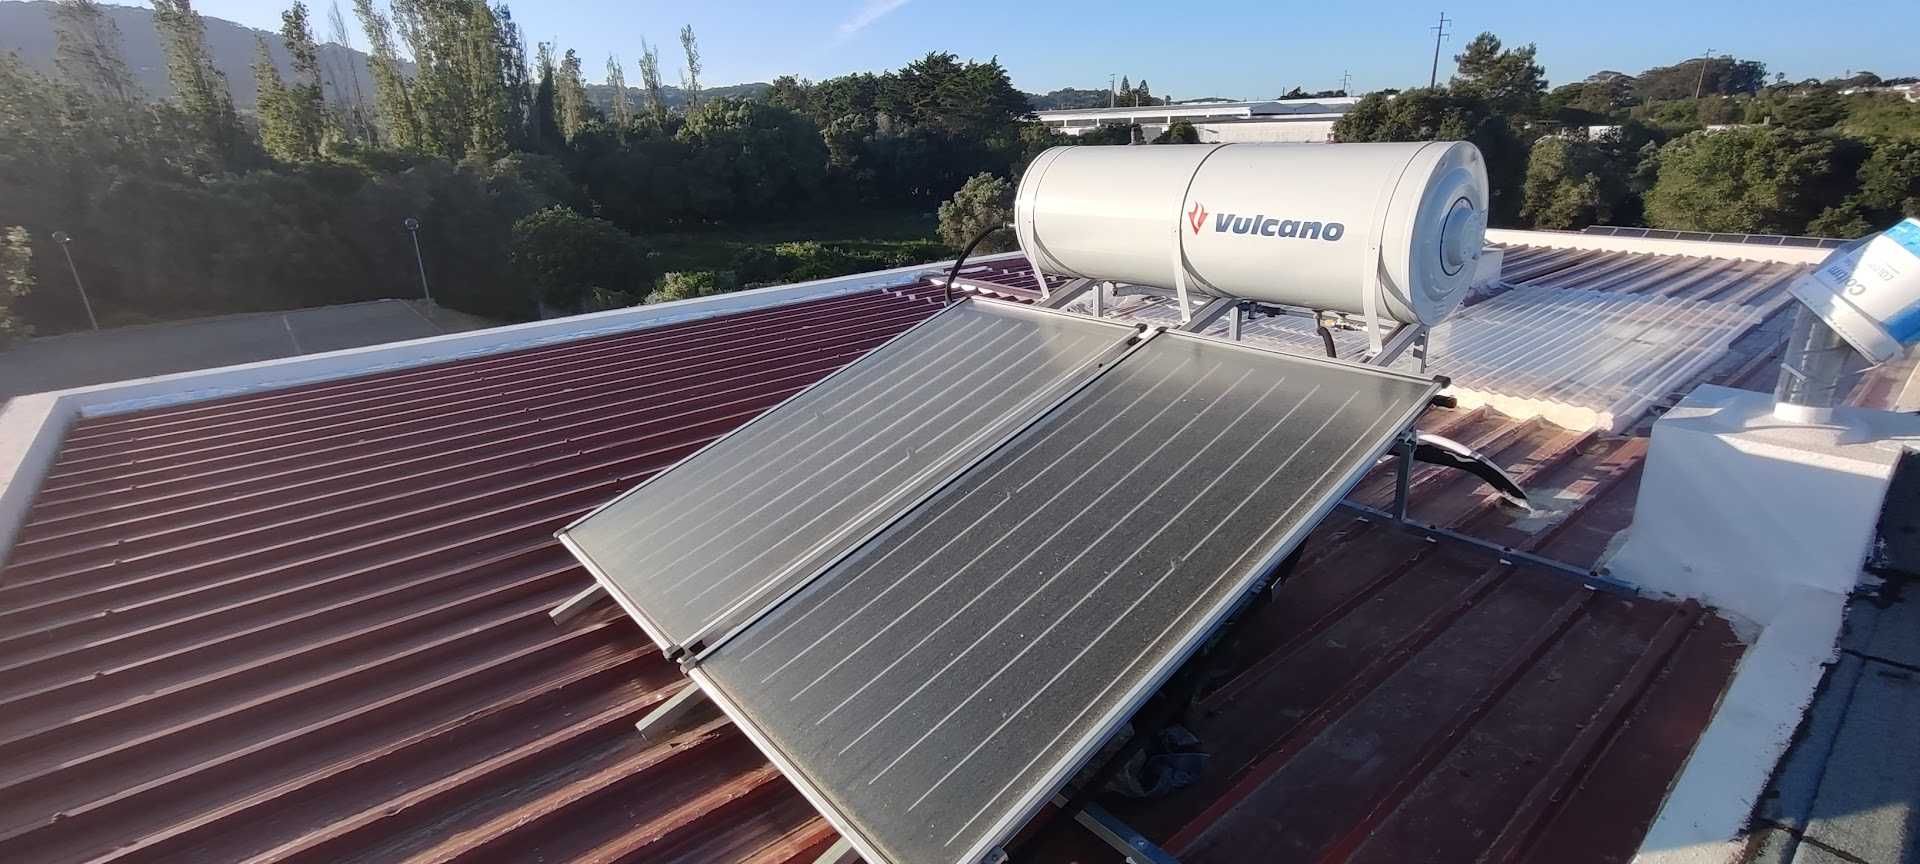 TERMOSSIFÃO SOLAR VULCANO F2 / TS 300 - 2E com 2 painéis solares 275L